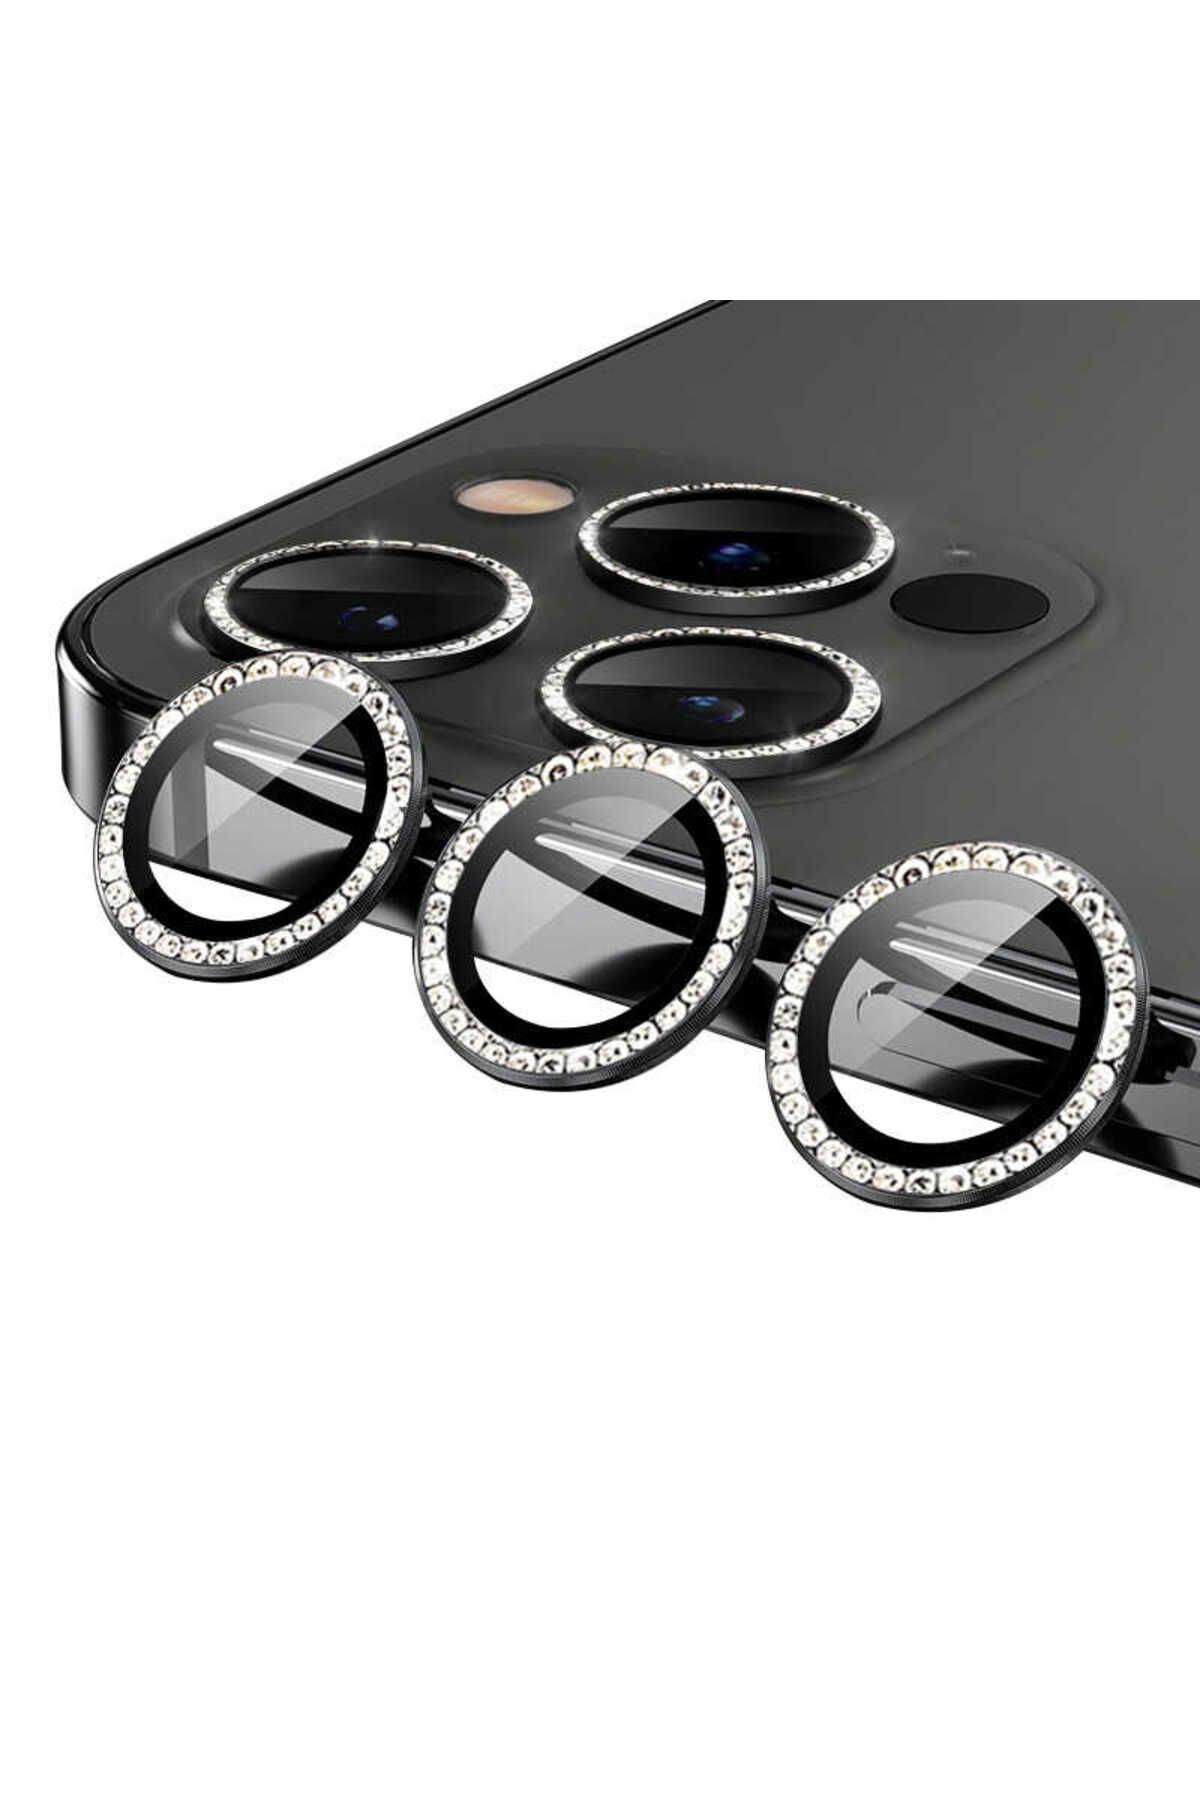 Bilişim Aksesuar iPhone 13 Pro Uyumlu Zore CL-06 Kamera Lens Koruyucu-Siyah